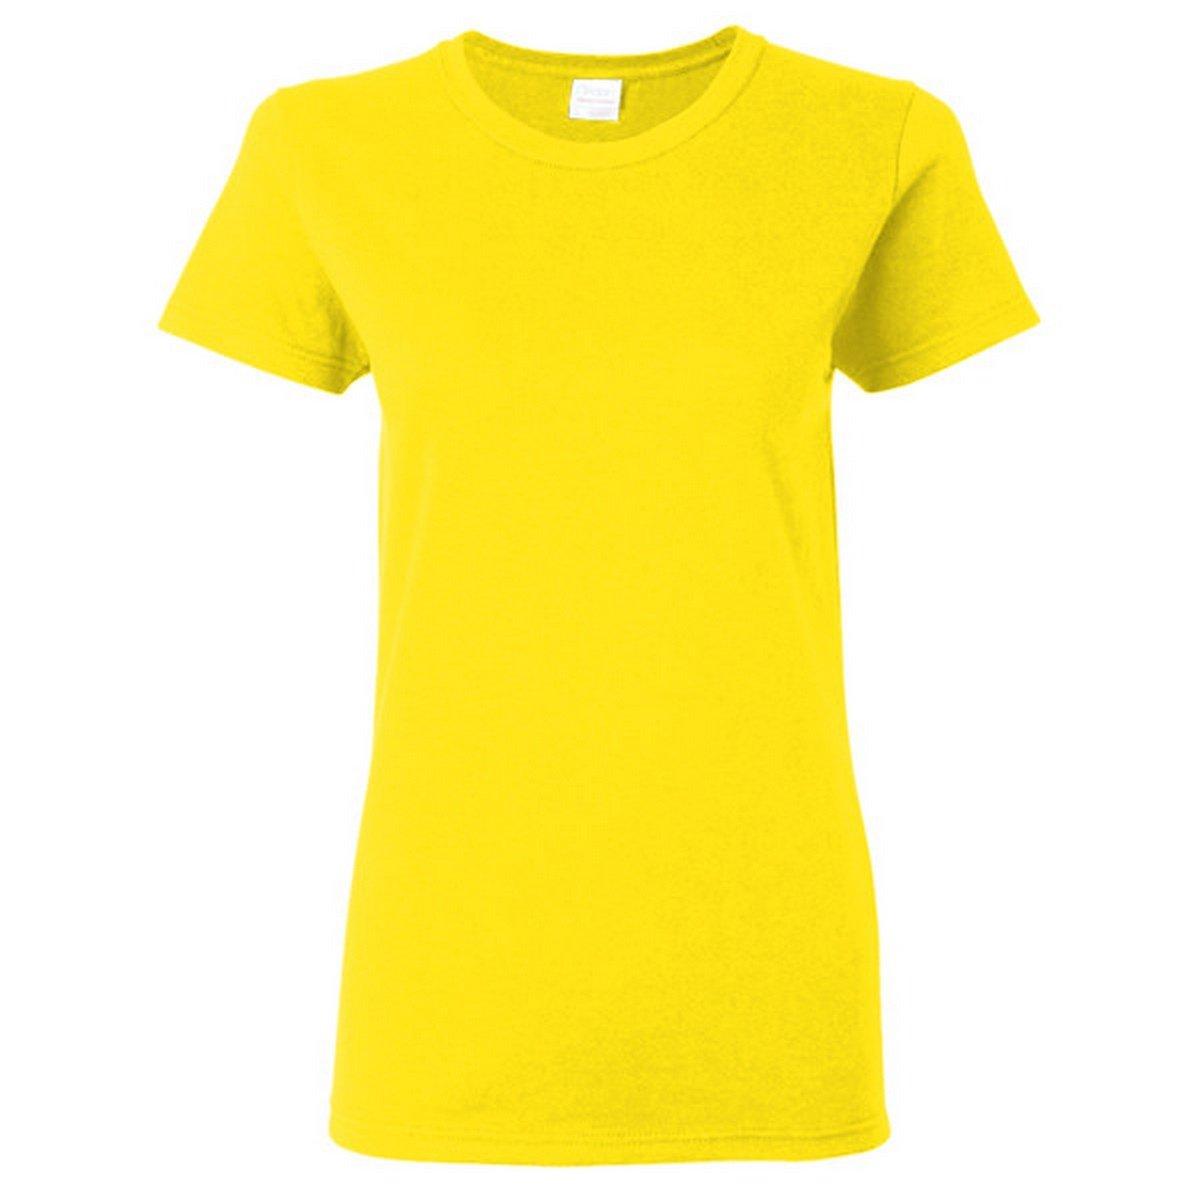 Tshirt, Enganliegend Damen Gelb Bunt XXL von Gildan